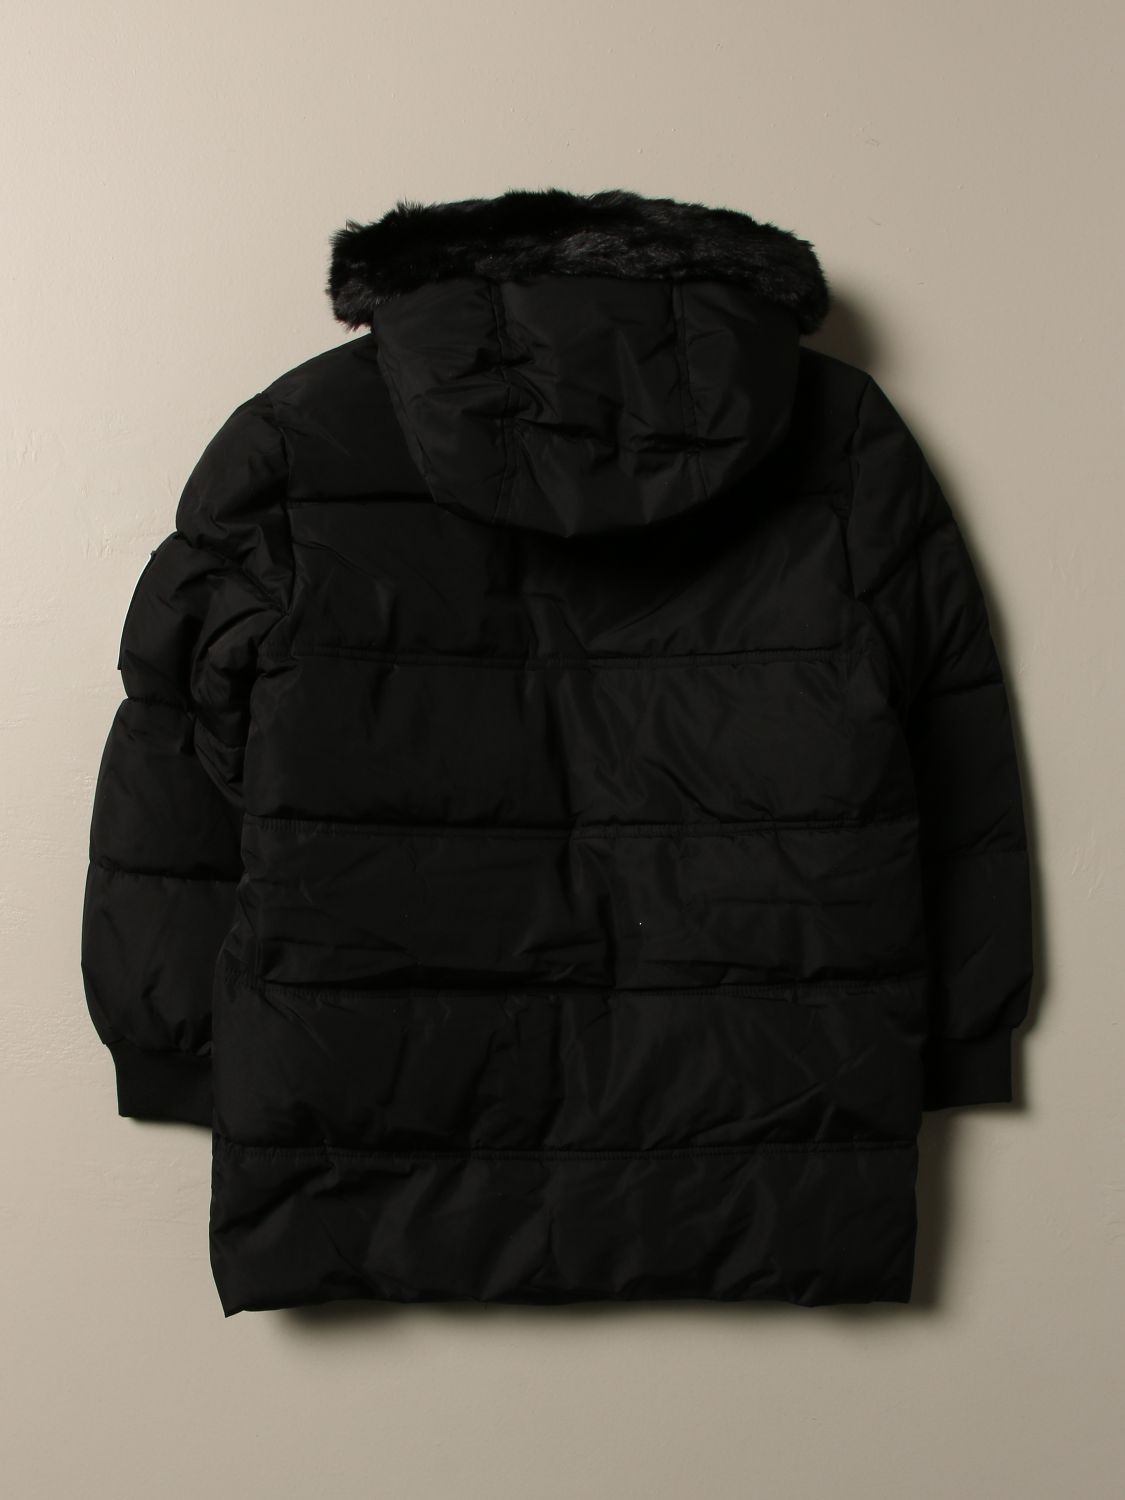 timberland jacket